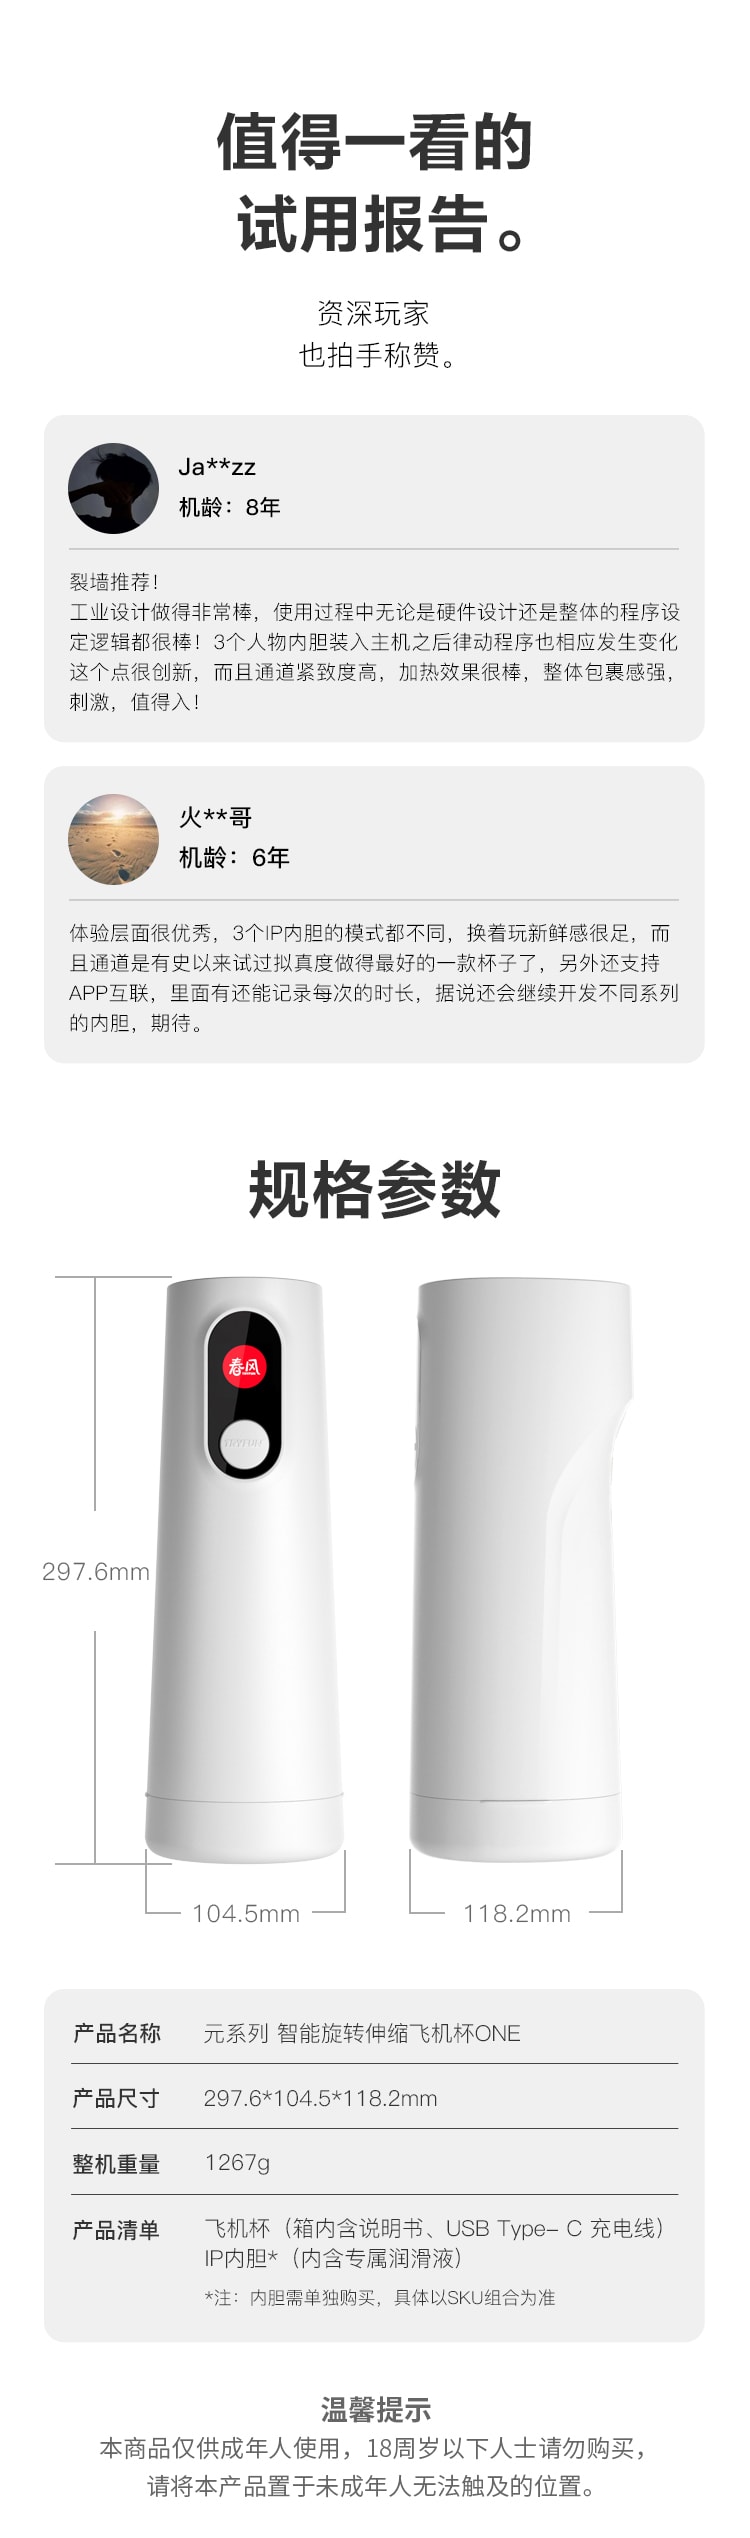 【美国现货】 中国网易春风元系列智能飞机杯白色 - 飞机杯+钰环IP内胆+润滑液